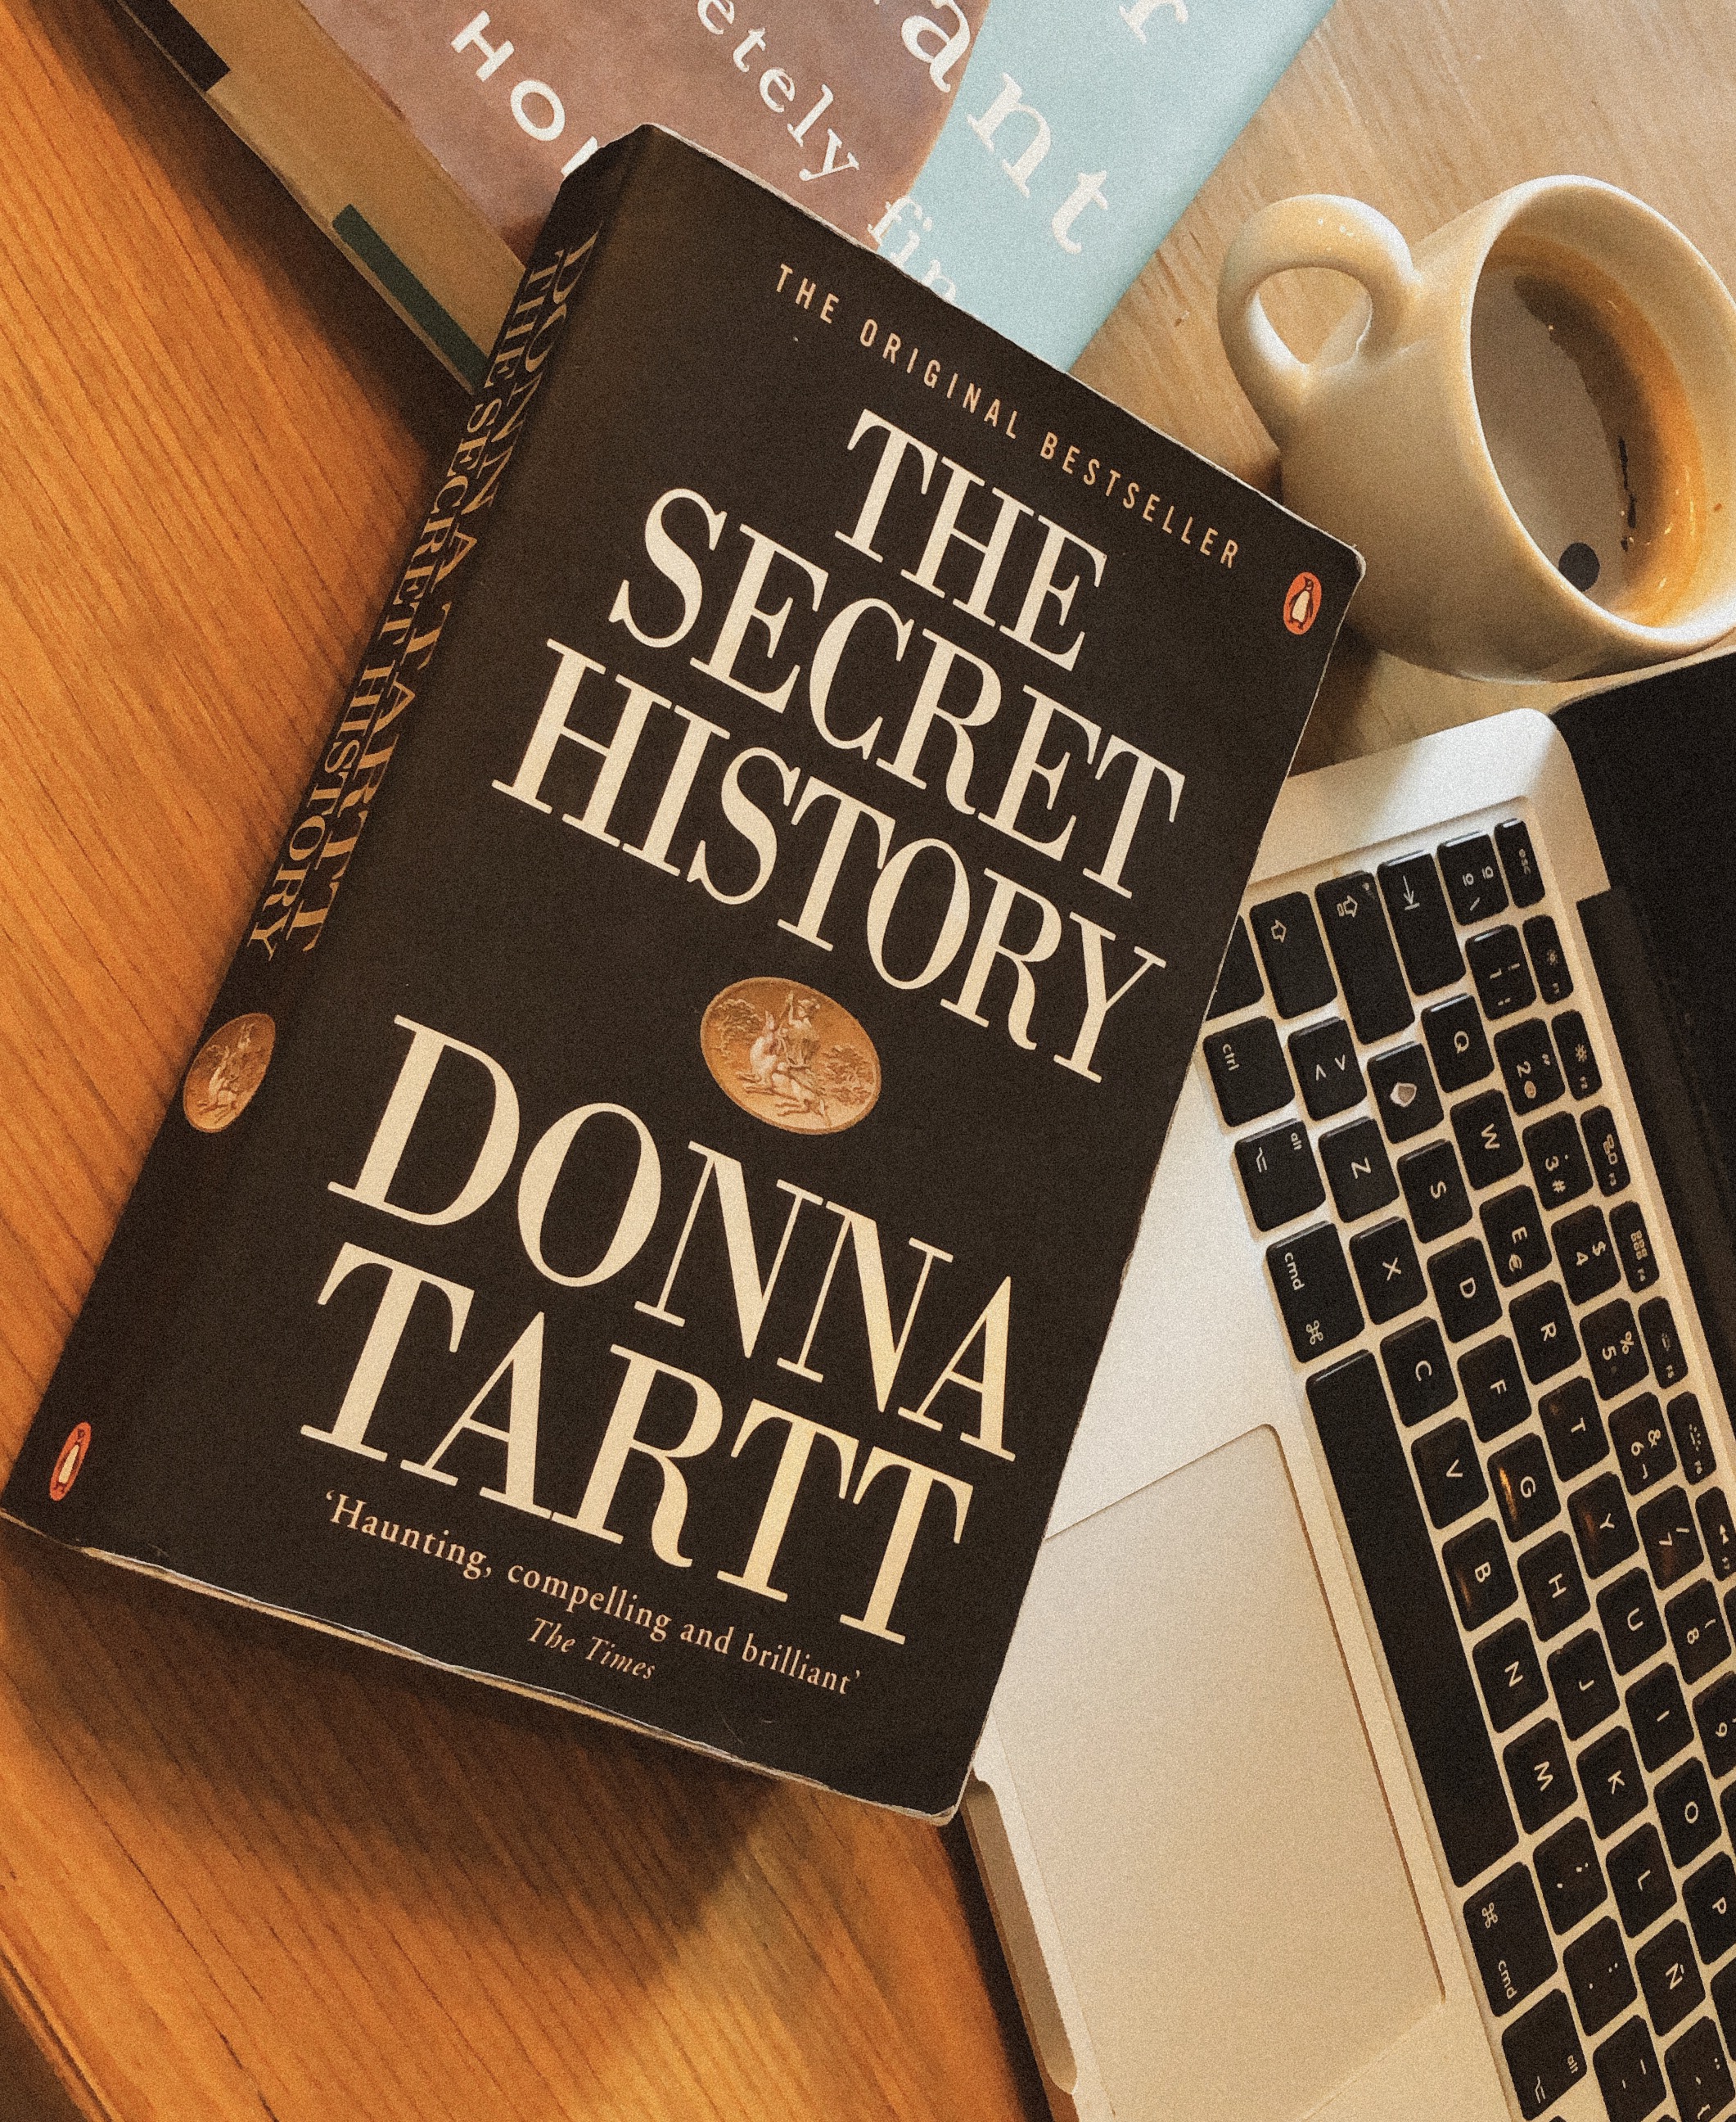 Men and Gods: The Secret History by Donna Tartt – fernanda ortega //  flowers in the library